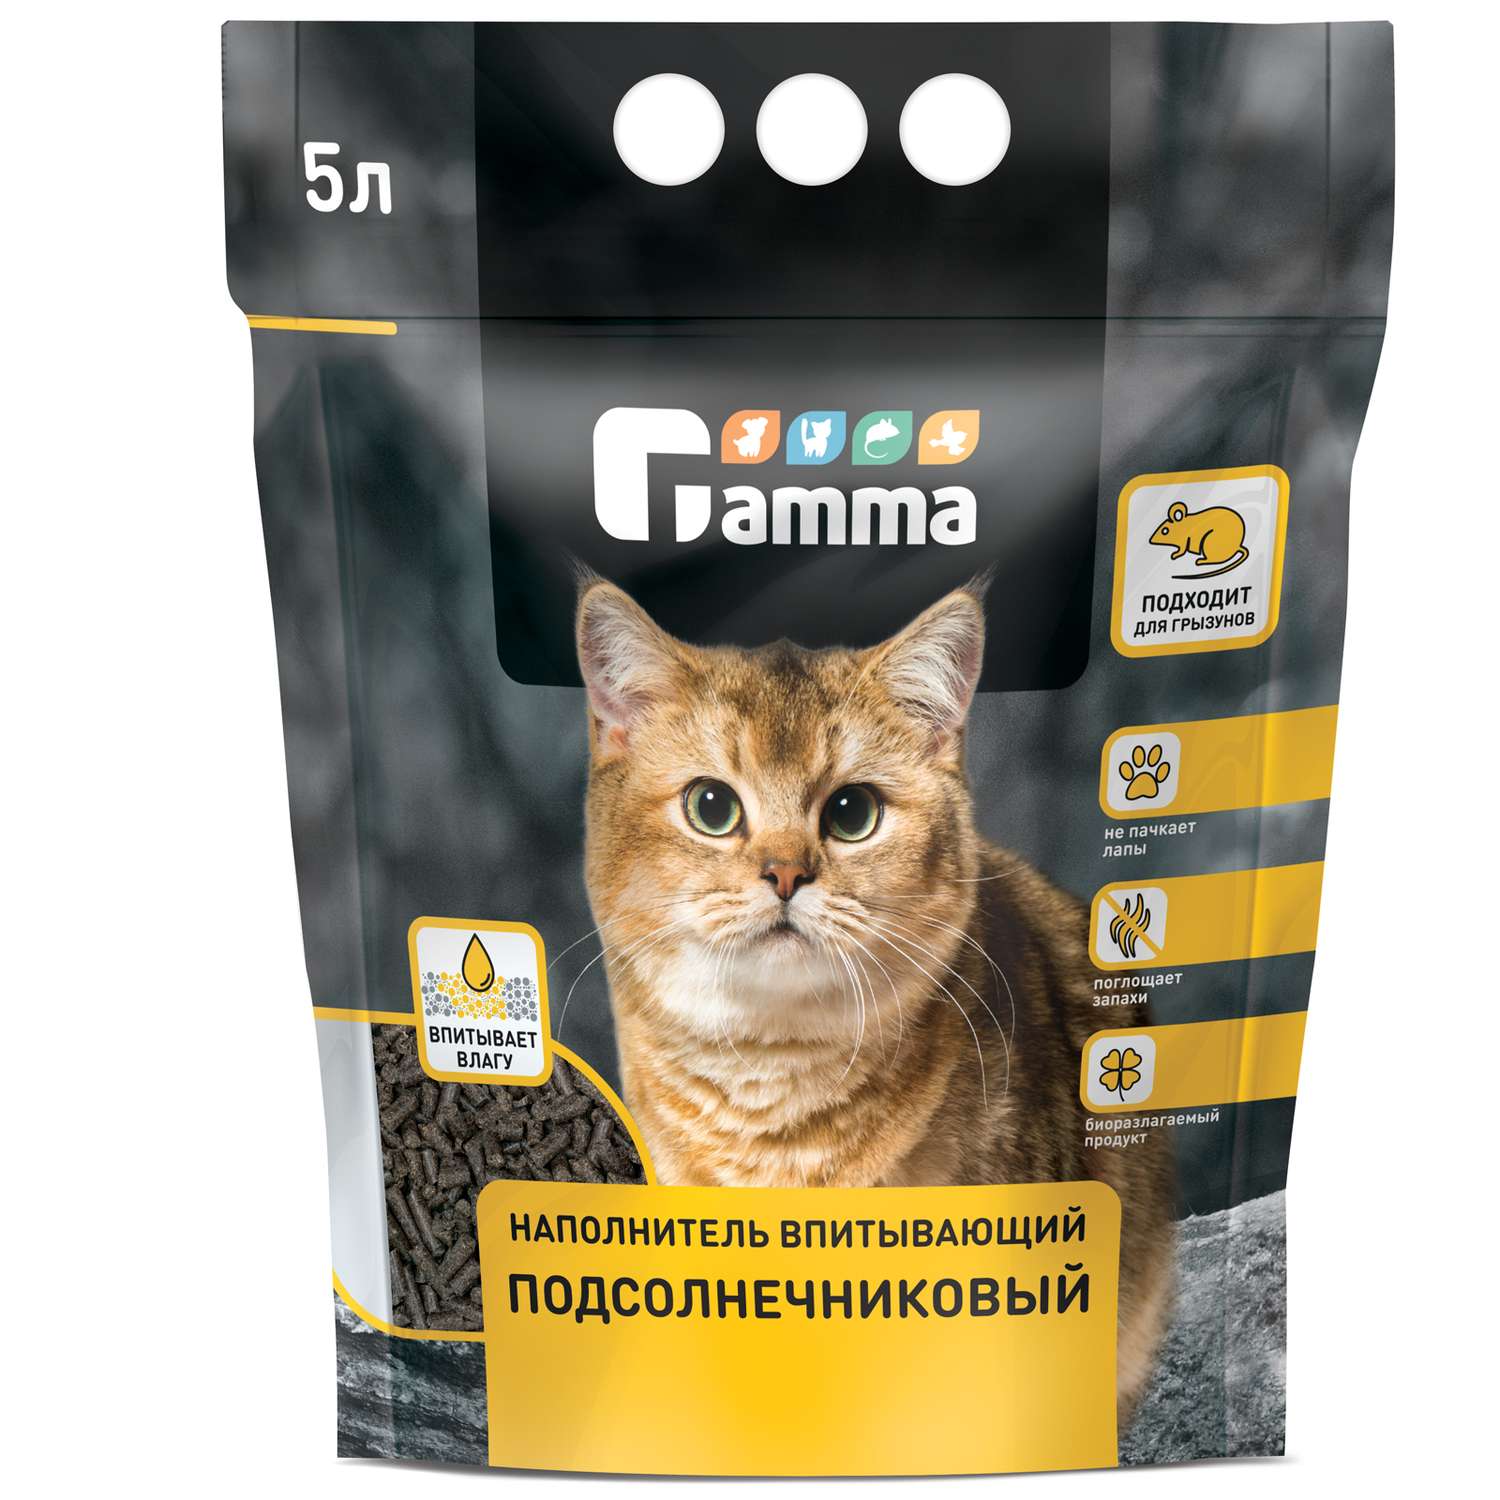 Наполнитель для кошек GAMMA растительный впитывающий 5л - фото 2